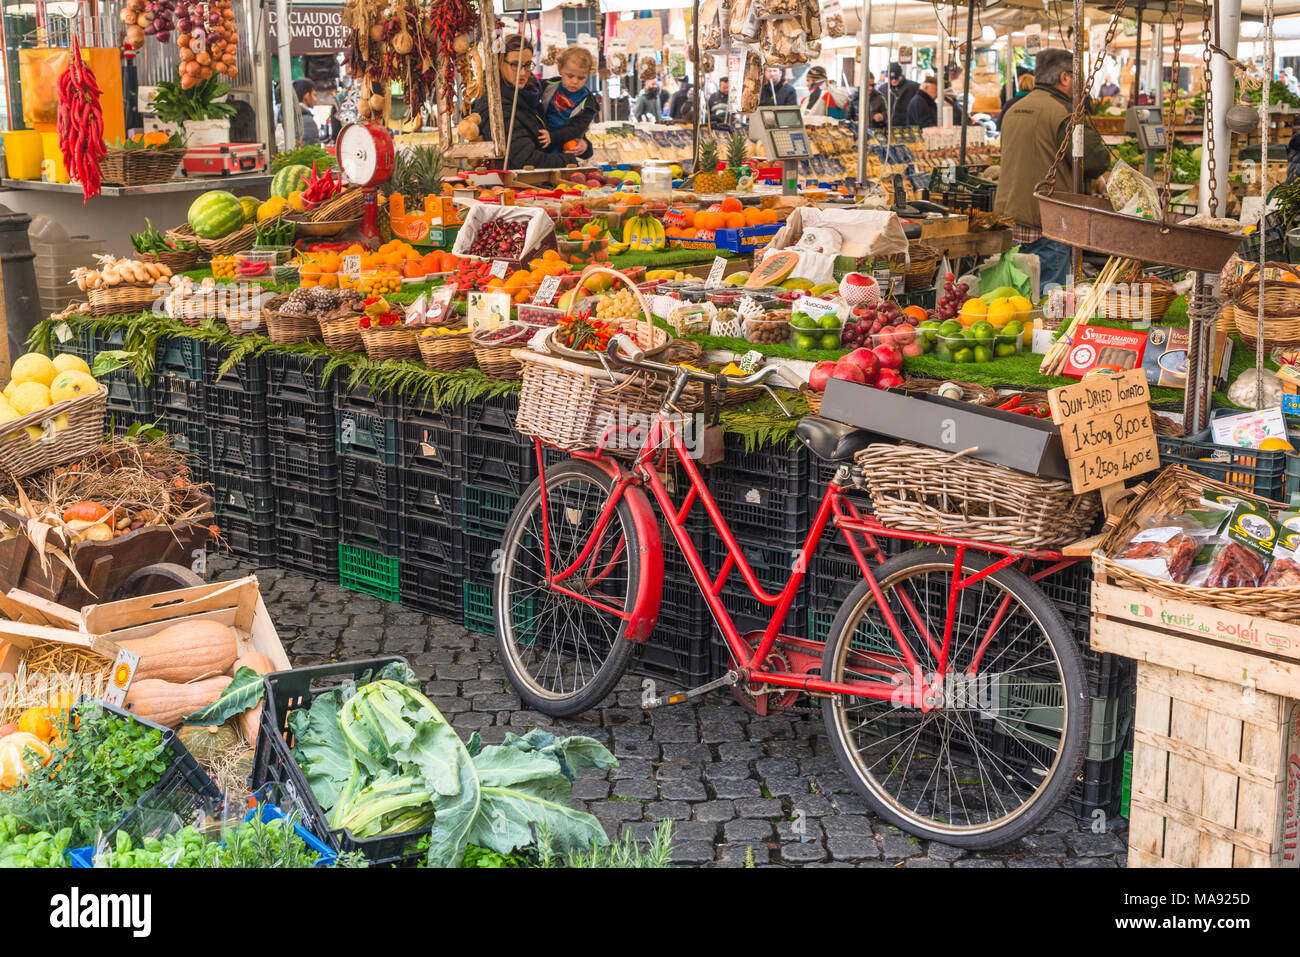 Colourful Market stalls at Campo de' Fiori Market, Rome, Italy Stock Photo  - Alamy